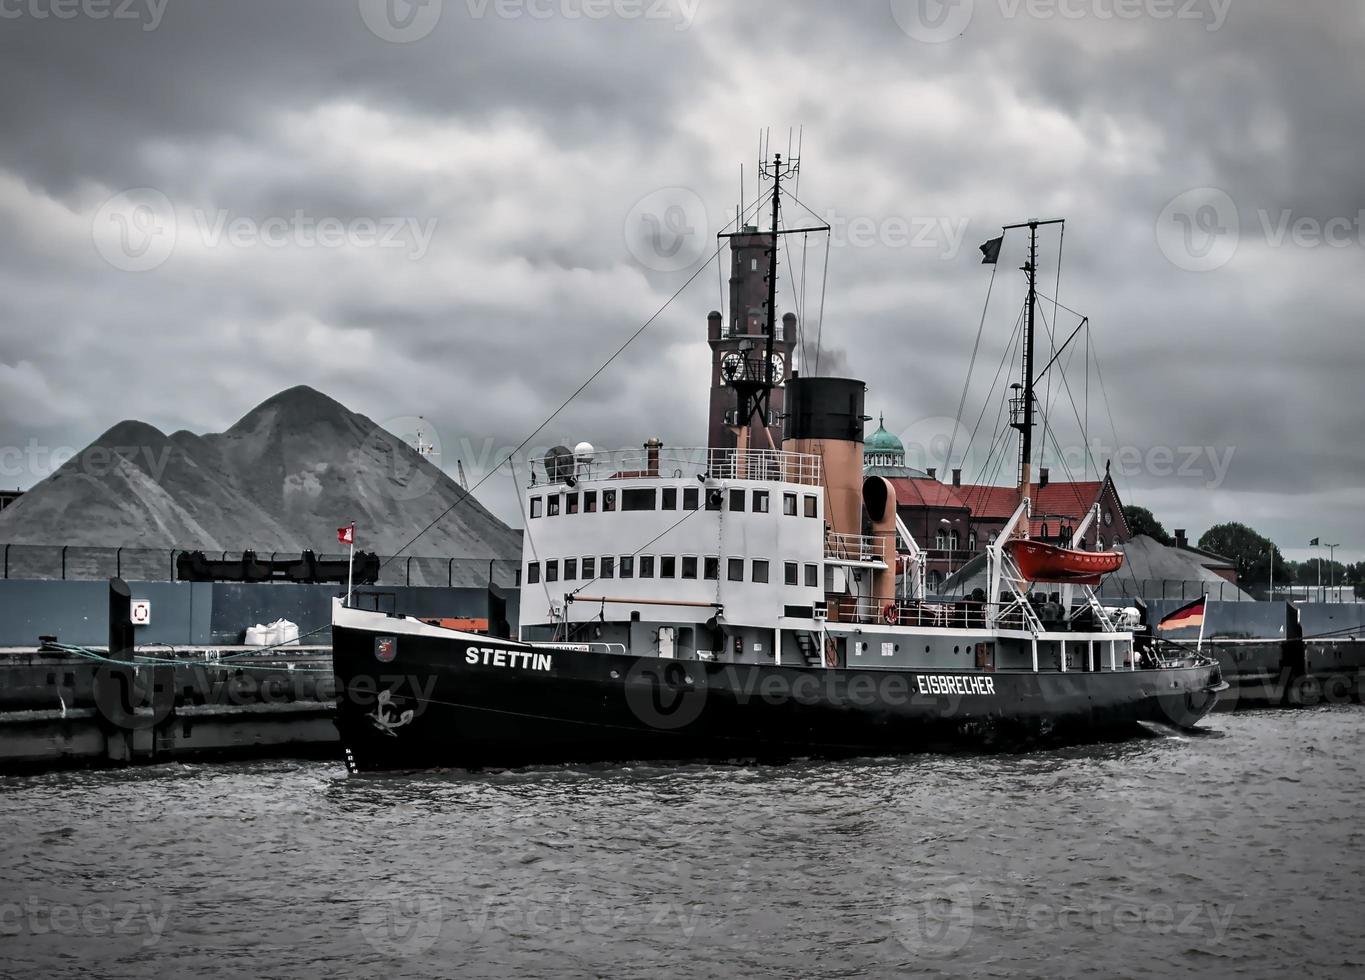 Viejo rompehielos a vapor en el puerto de Cuxhaven, Alemania, 2019 foto